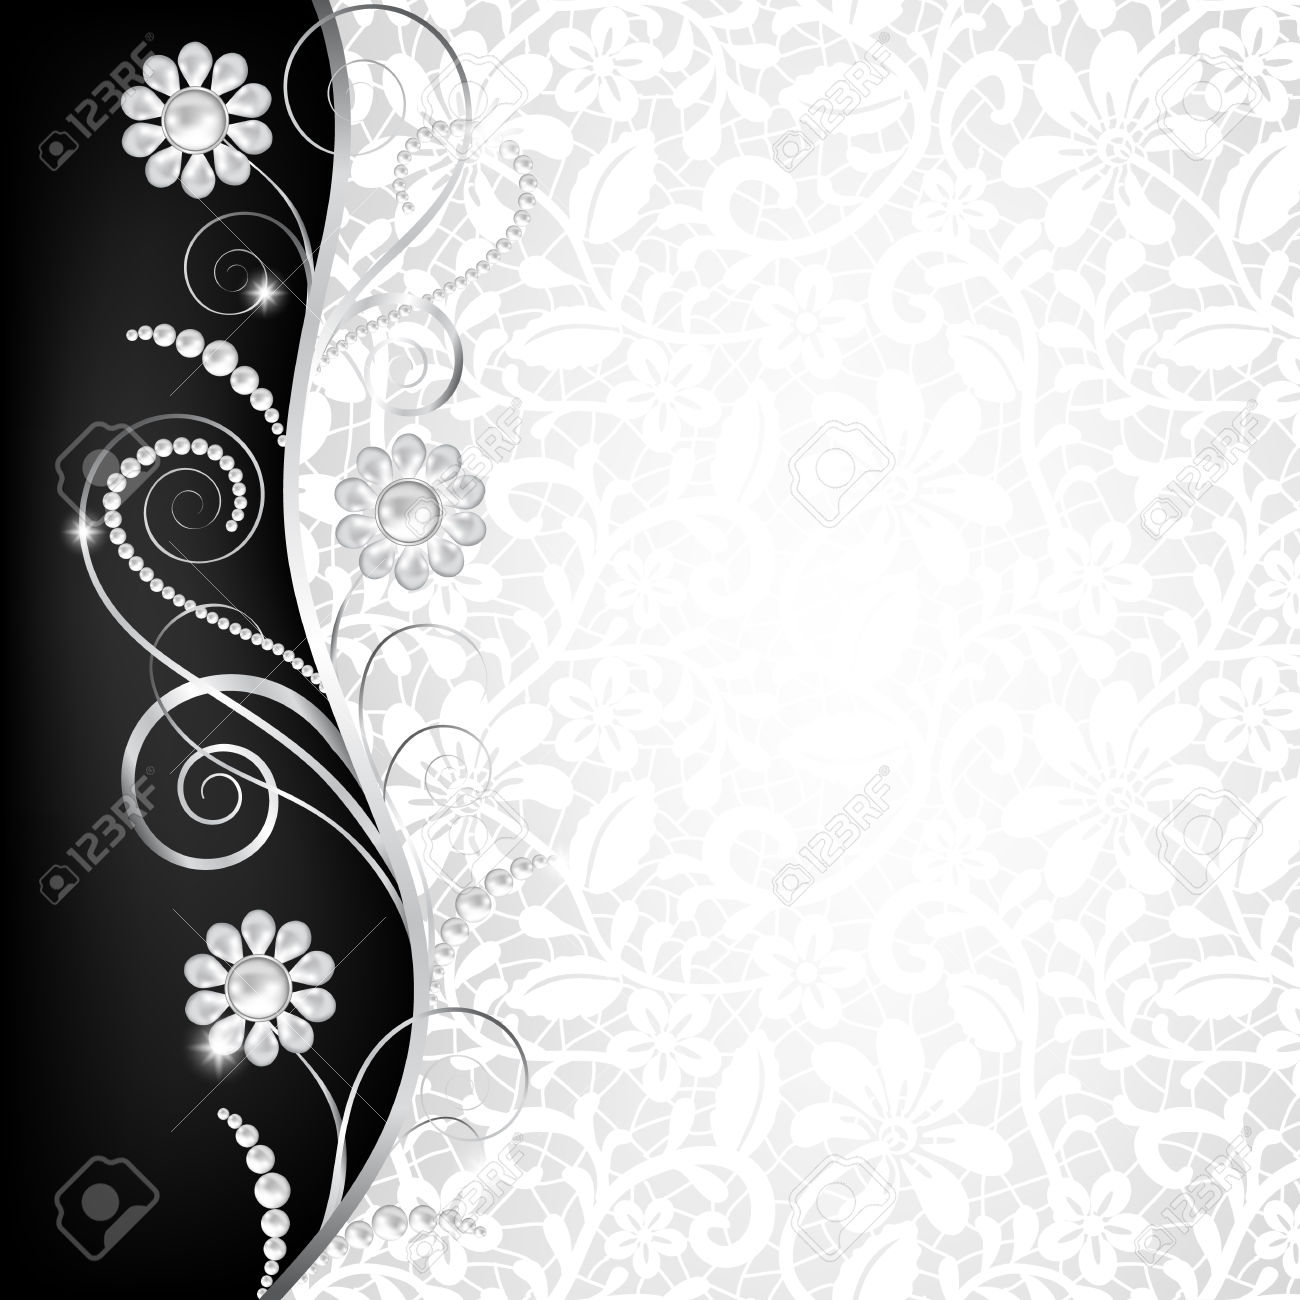 vip wallpaper hd,testo,modello,bianco e nero,design,disegno floreale